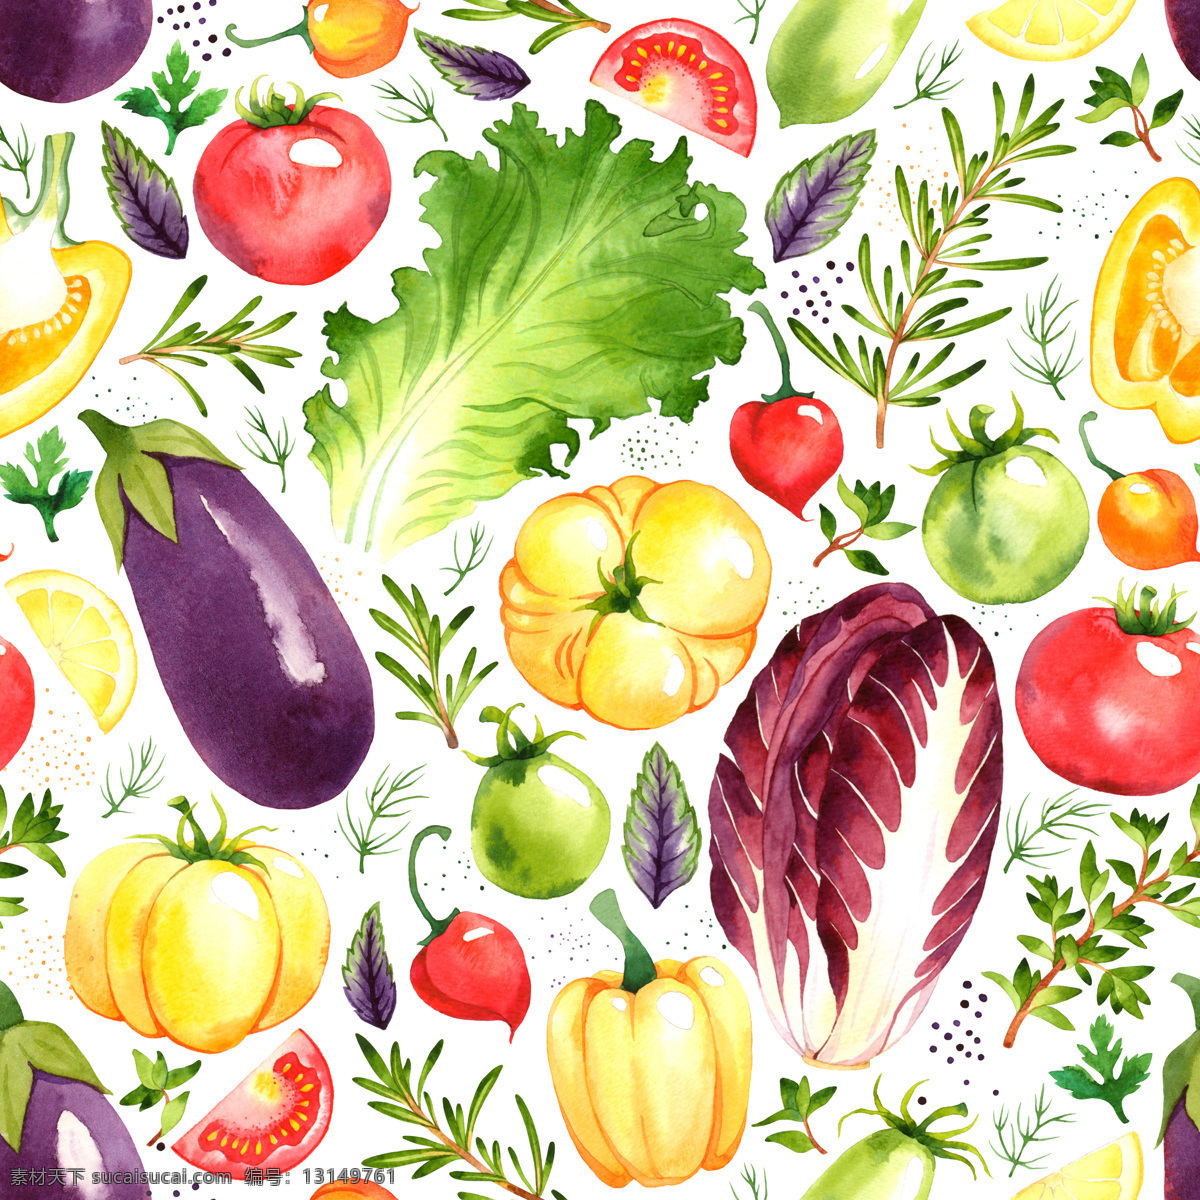 水彩 绘 清新 蔬菜 背景 底纹 水彩绘 手绘 底纹边框 背景底纹